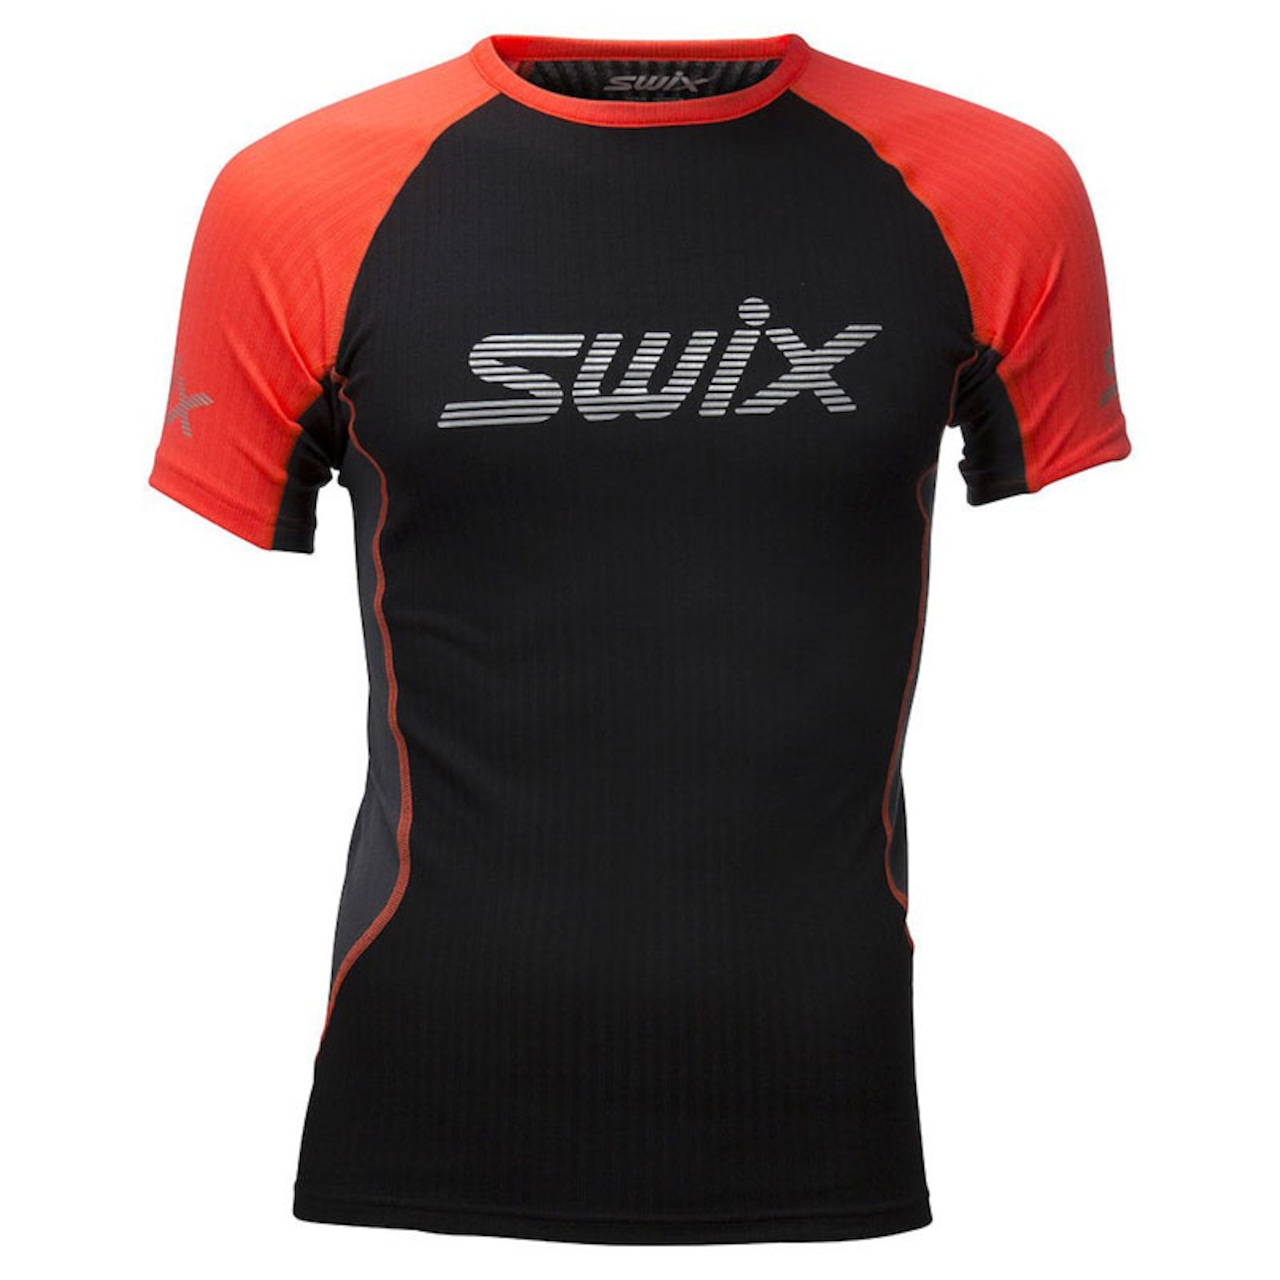 SWIX(スウィックス) Radiant レースX SS 半袖 メンズ 40611-90015 ベースレイヤー インナー トレッキング アウトドア スポーツ ジム フィットネス ランニング ウェア